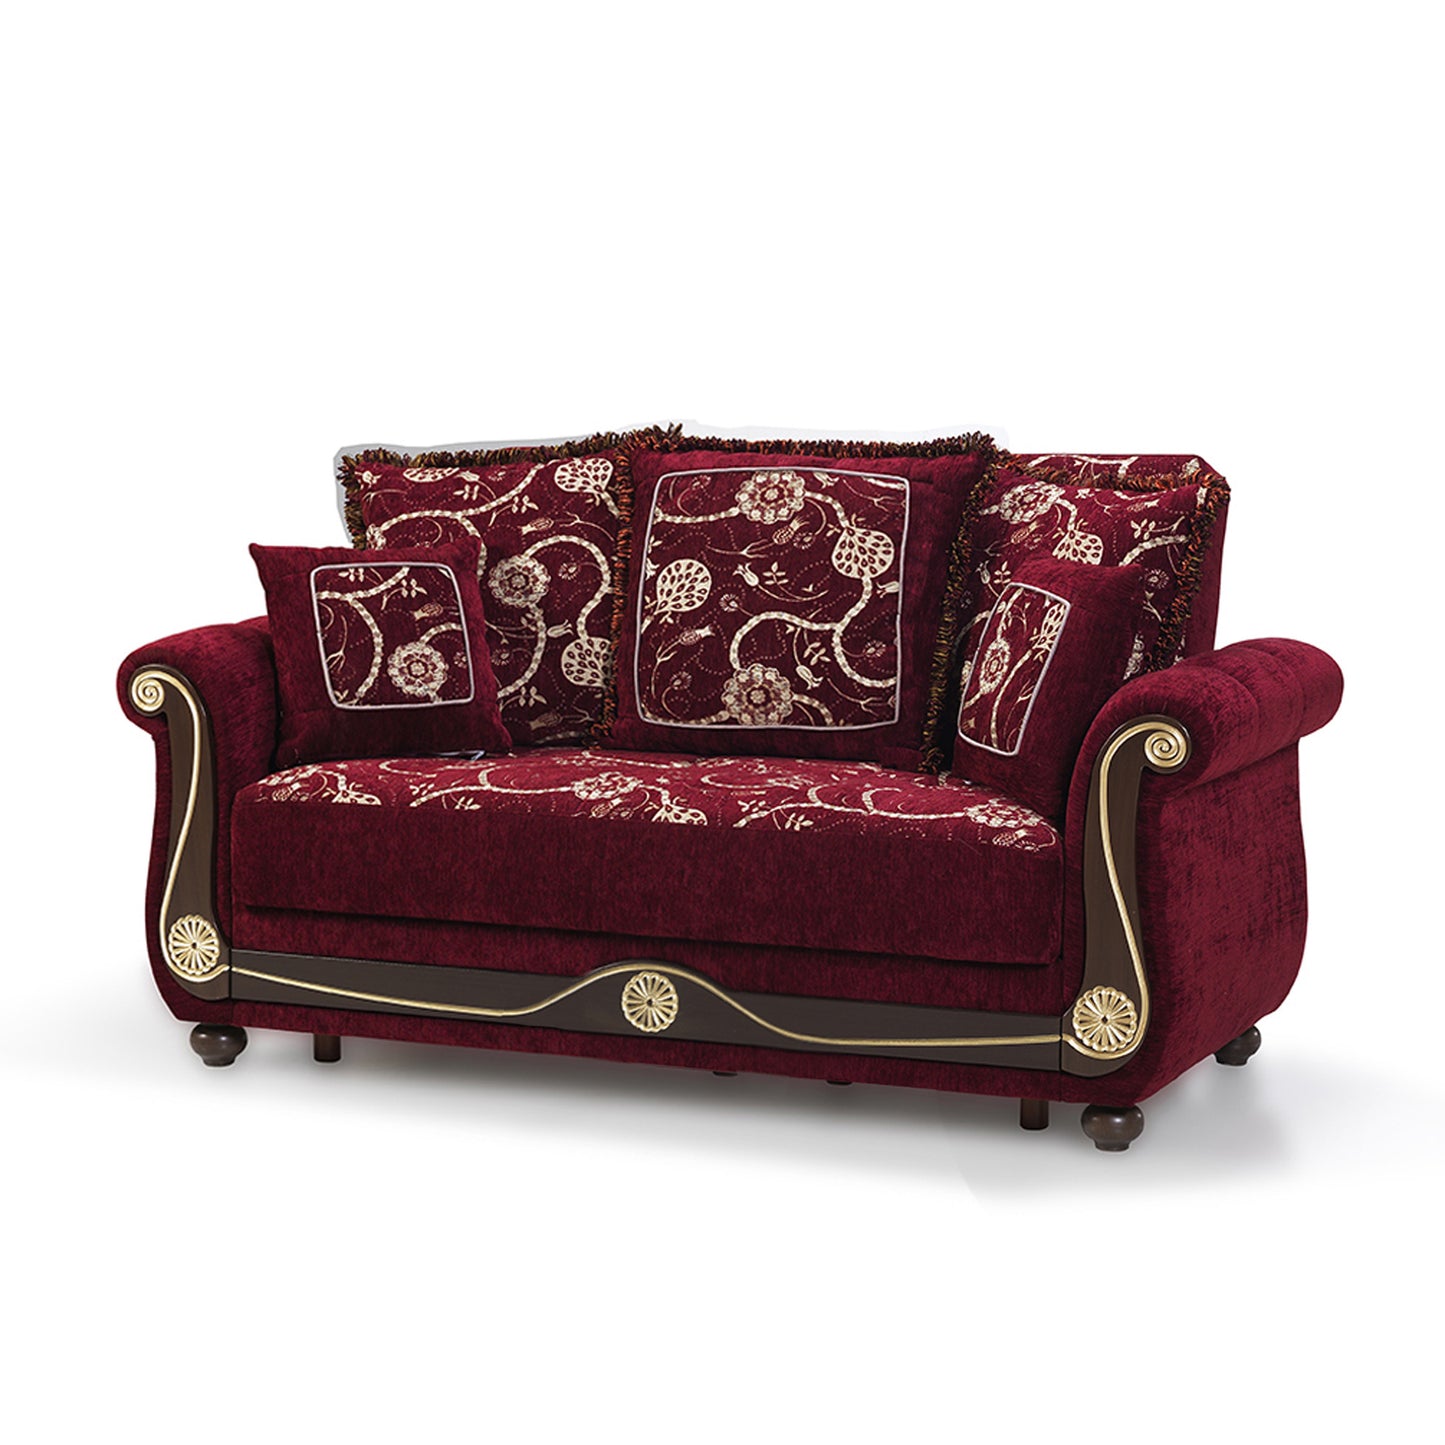 71" Burgundy Dark Brown Chenille Futon Convertible Sleeper Love Seat With Storage